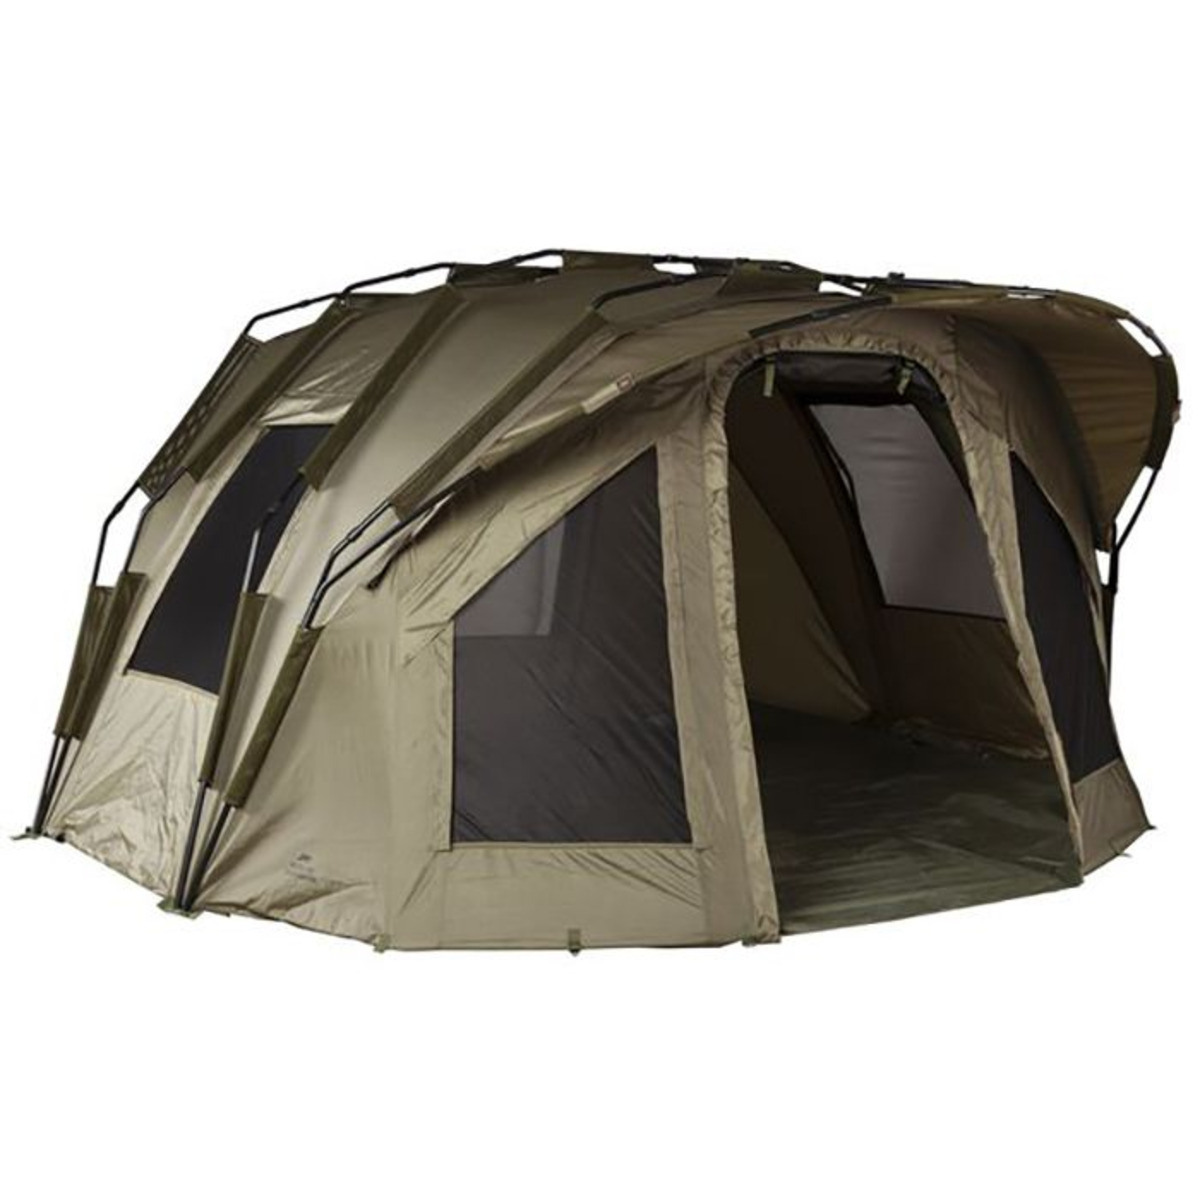 JRC Quad 2G Continental - 255x155x290 cm - Tent         